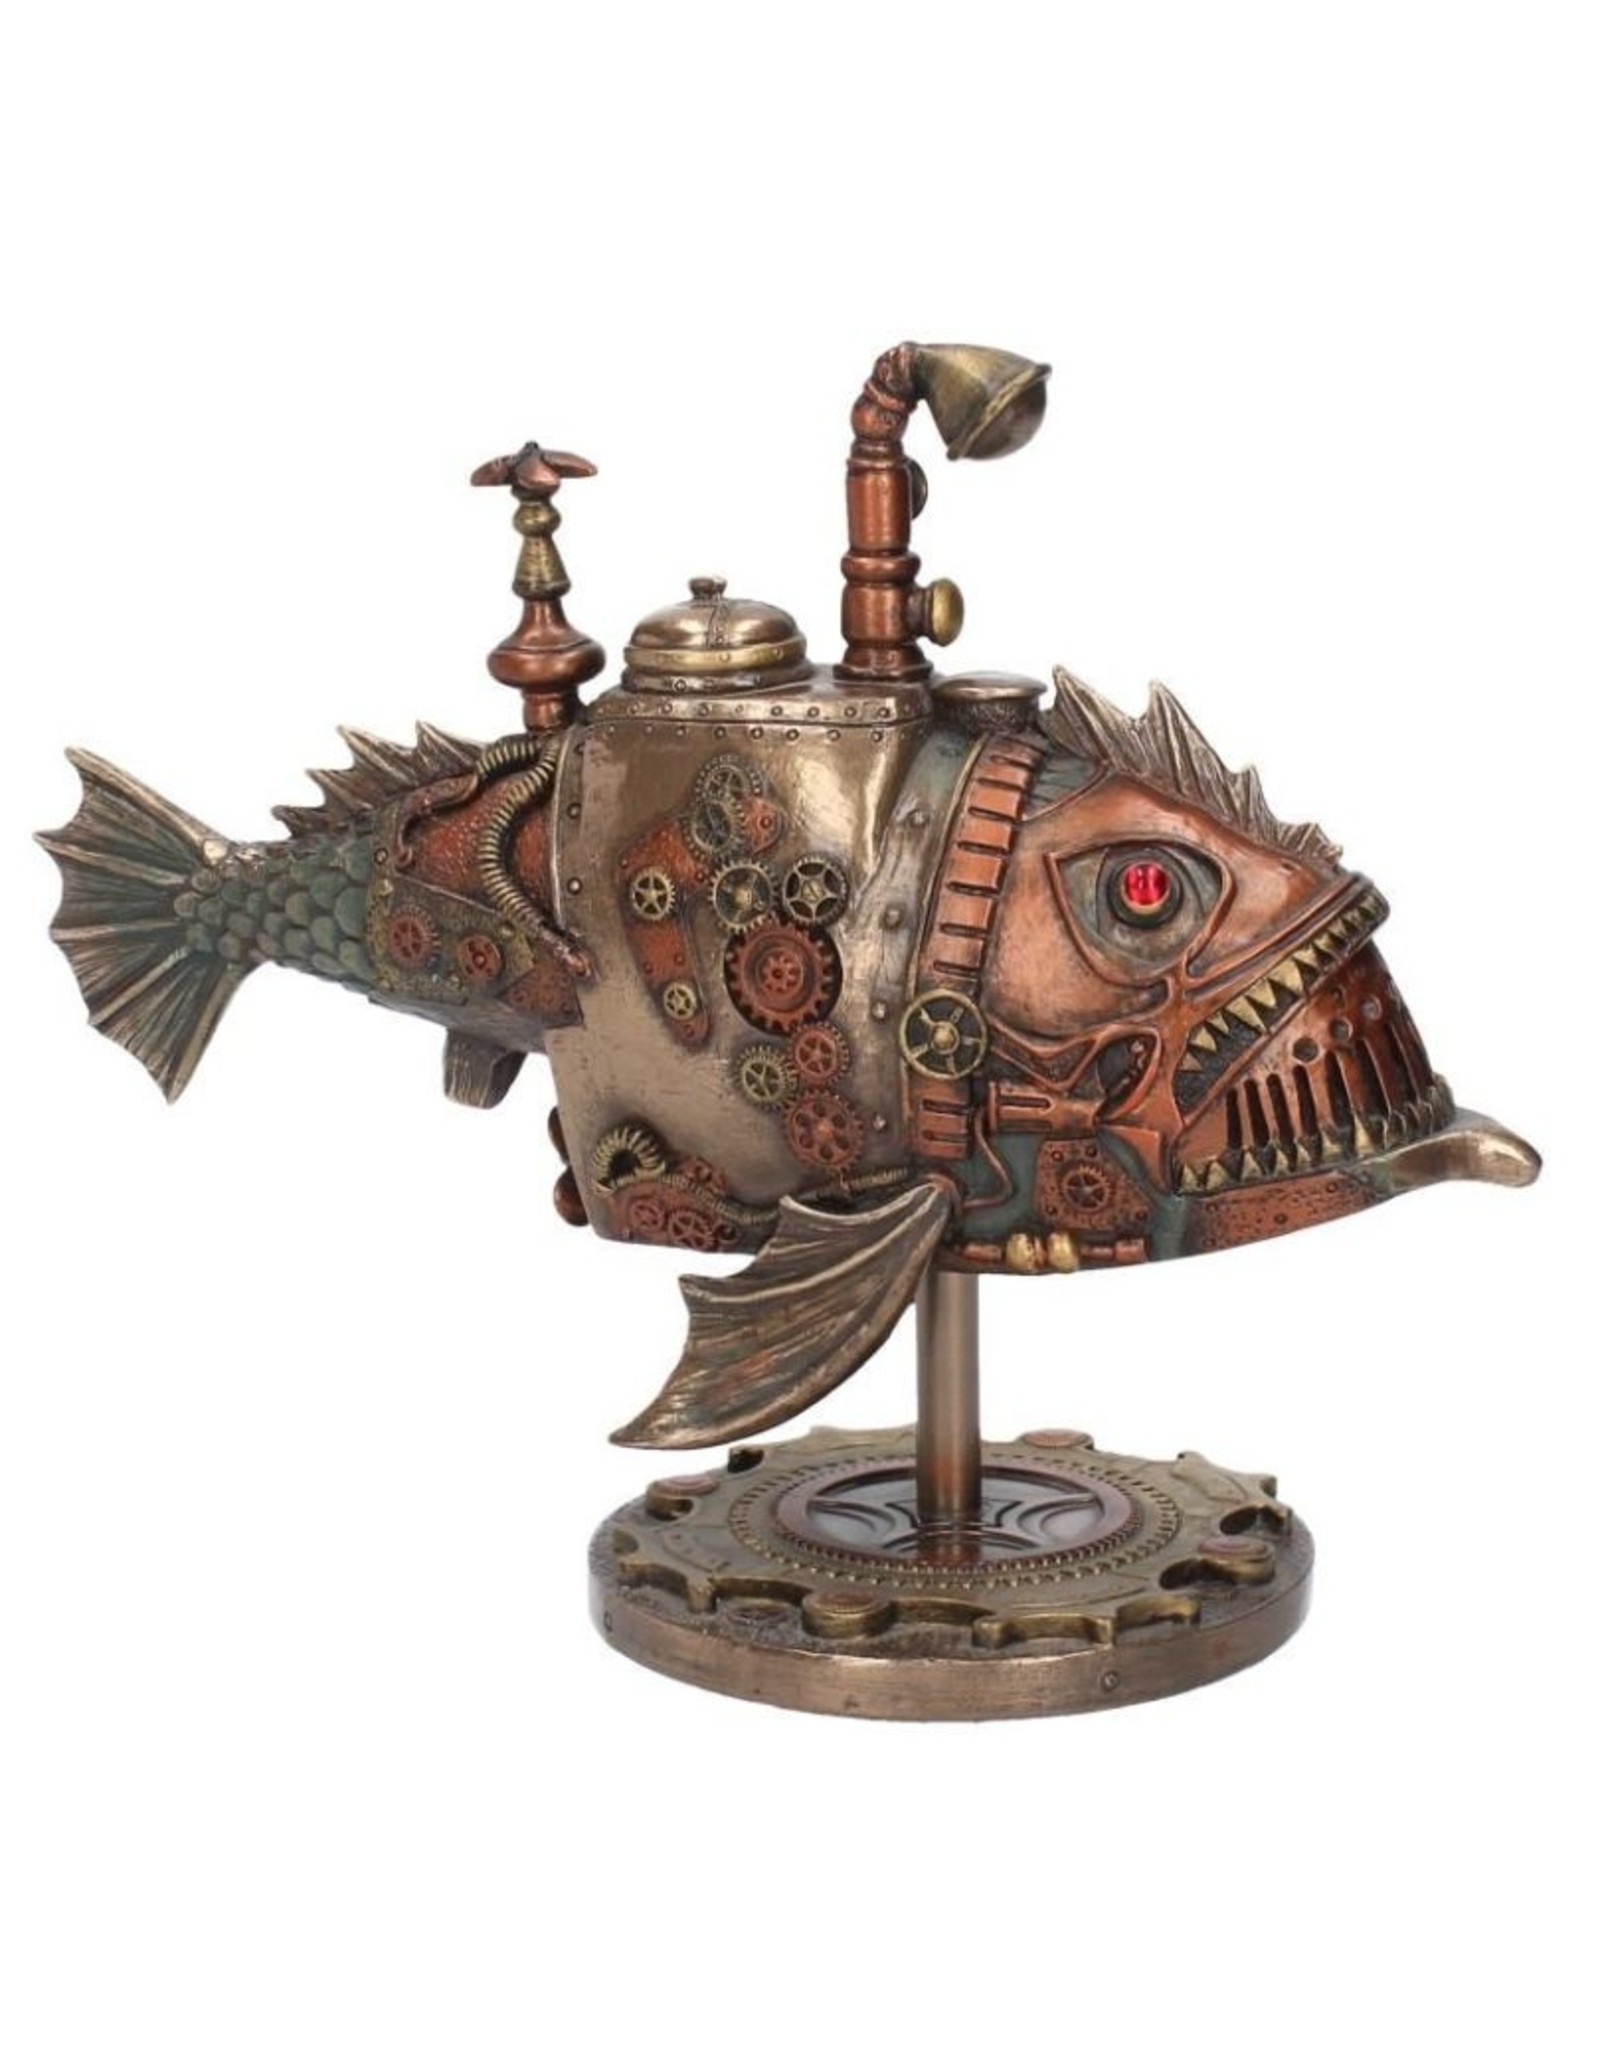 Veronese Design Giftware & Lifestyle -  Steampunk Submarine Sub Piranha bronzed figurine